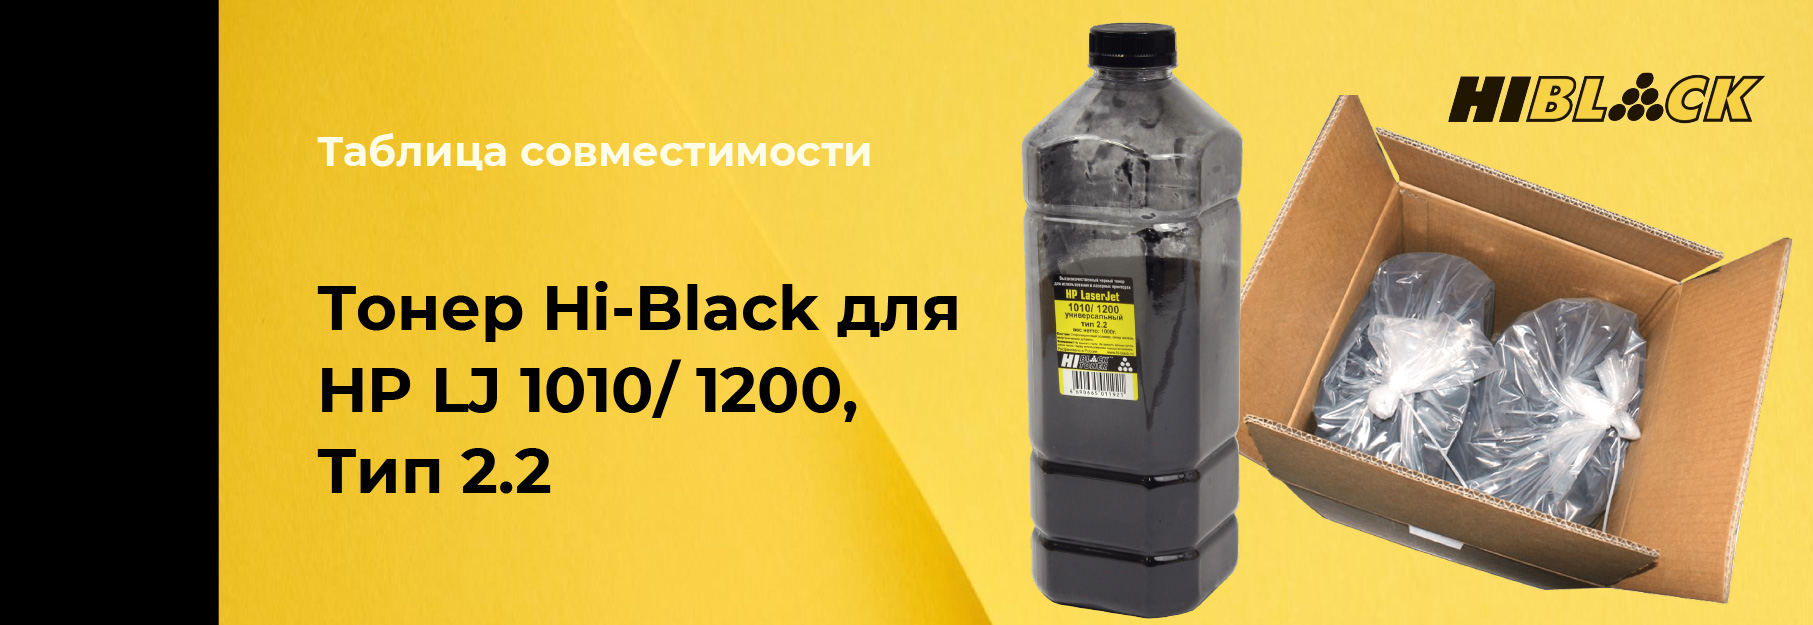 tablica-sovmestimosti-Hi-Black-HP-LJ-1010-2.jpg